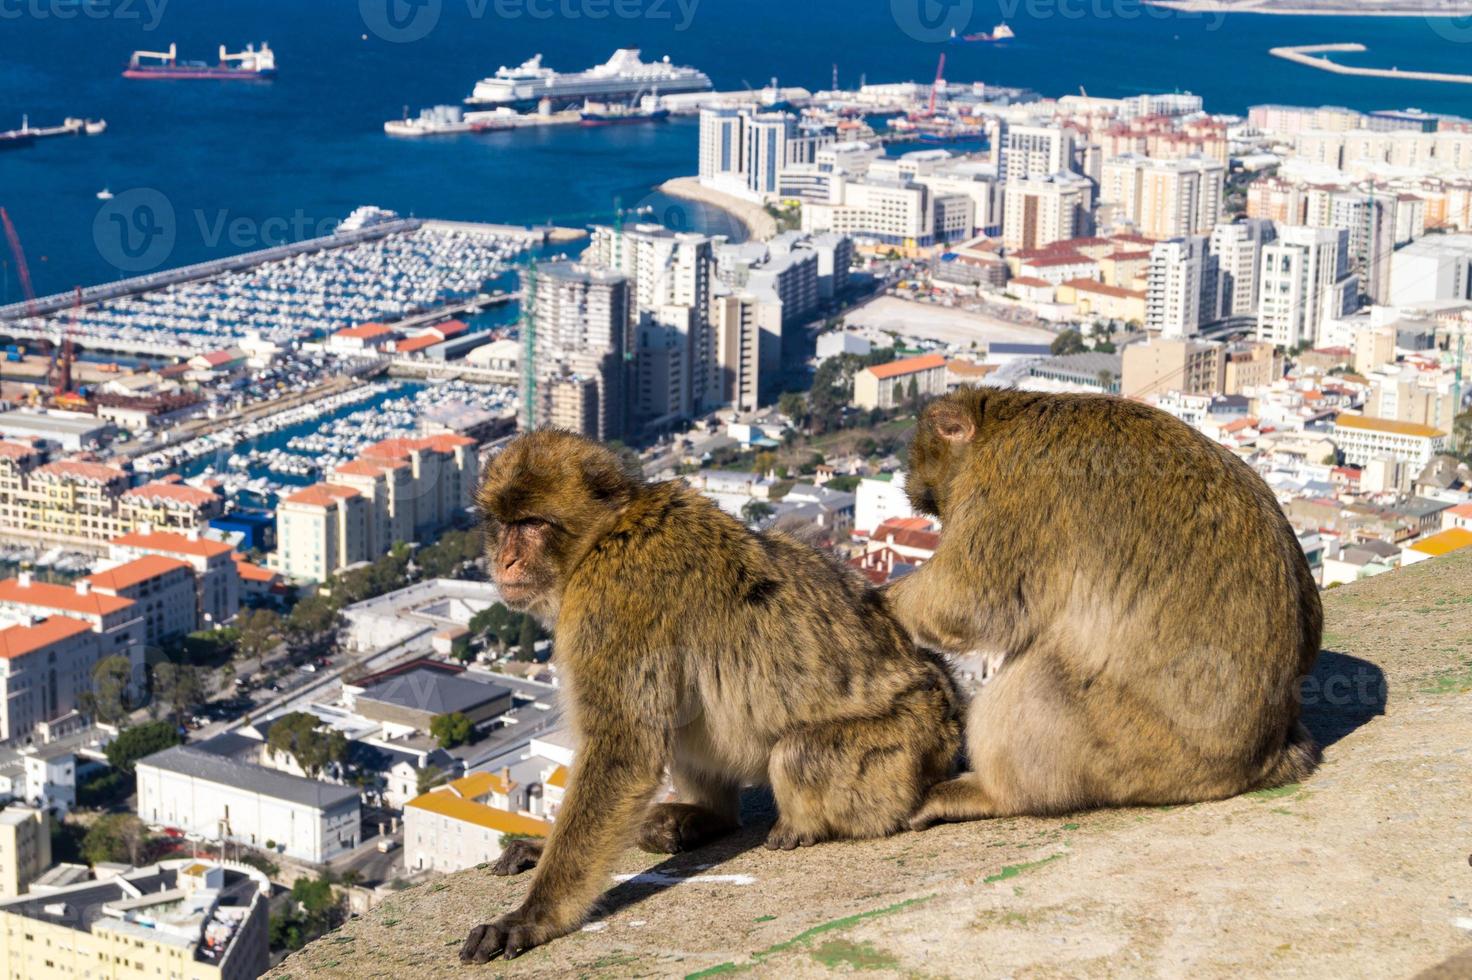 magot barbarijse apen sylvanus macaca aap in gibraltar foto